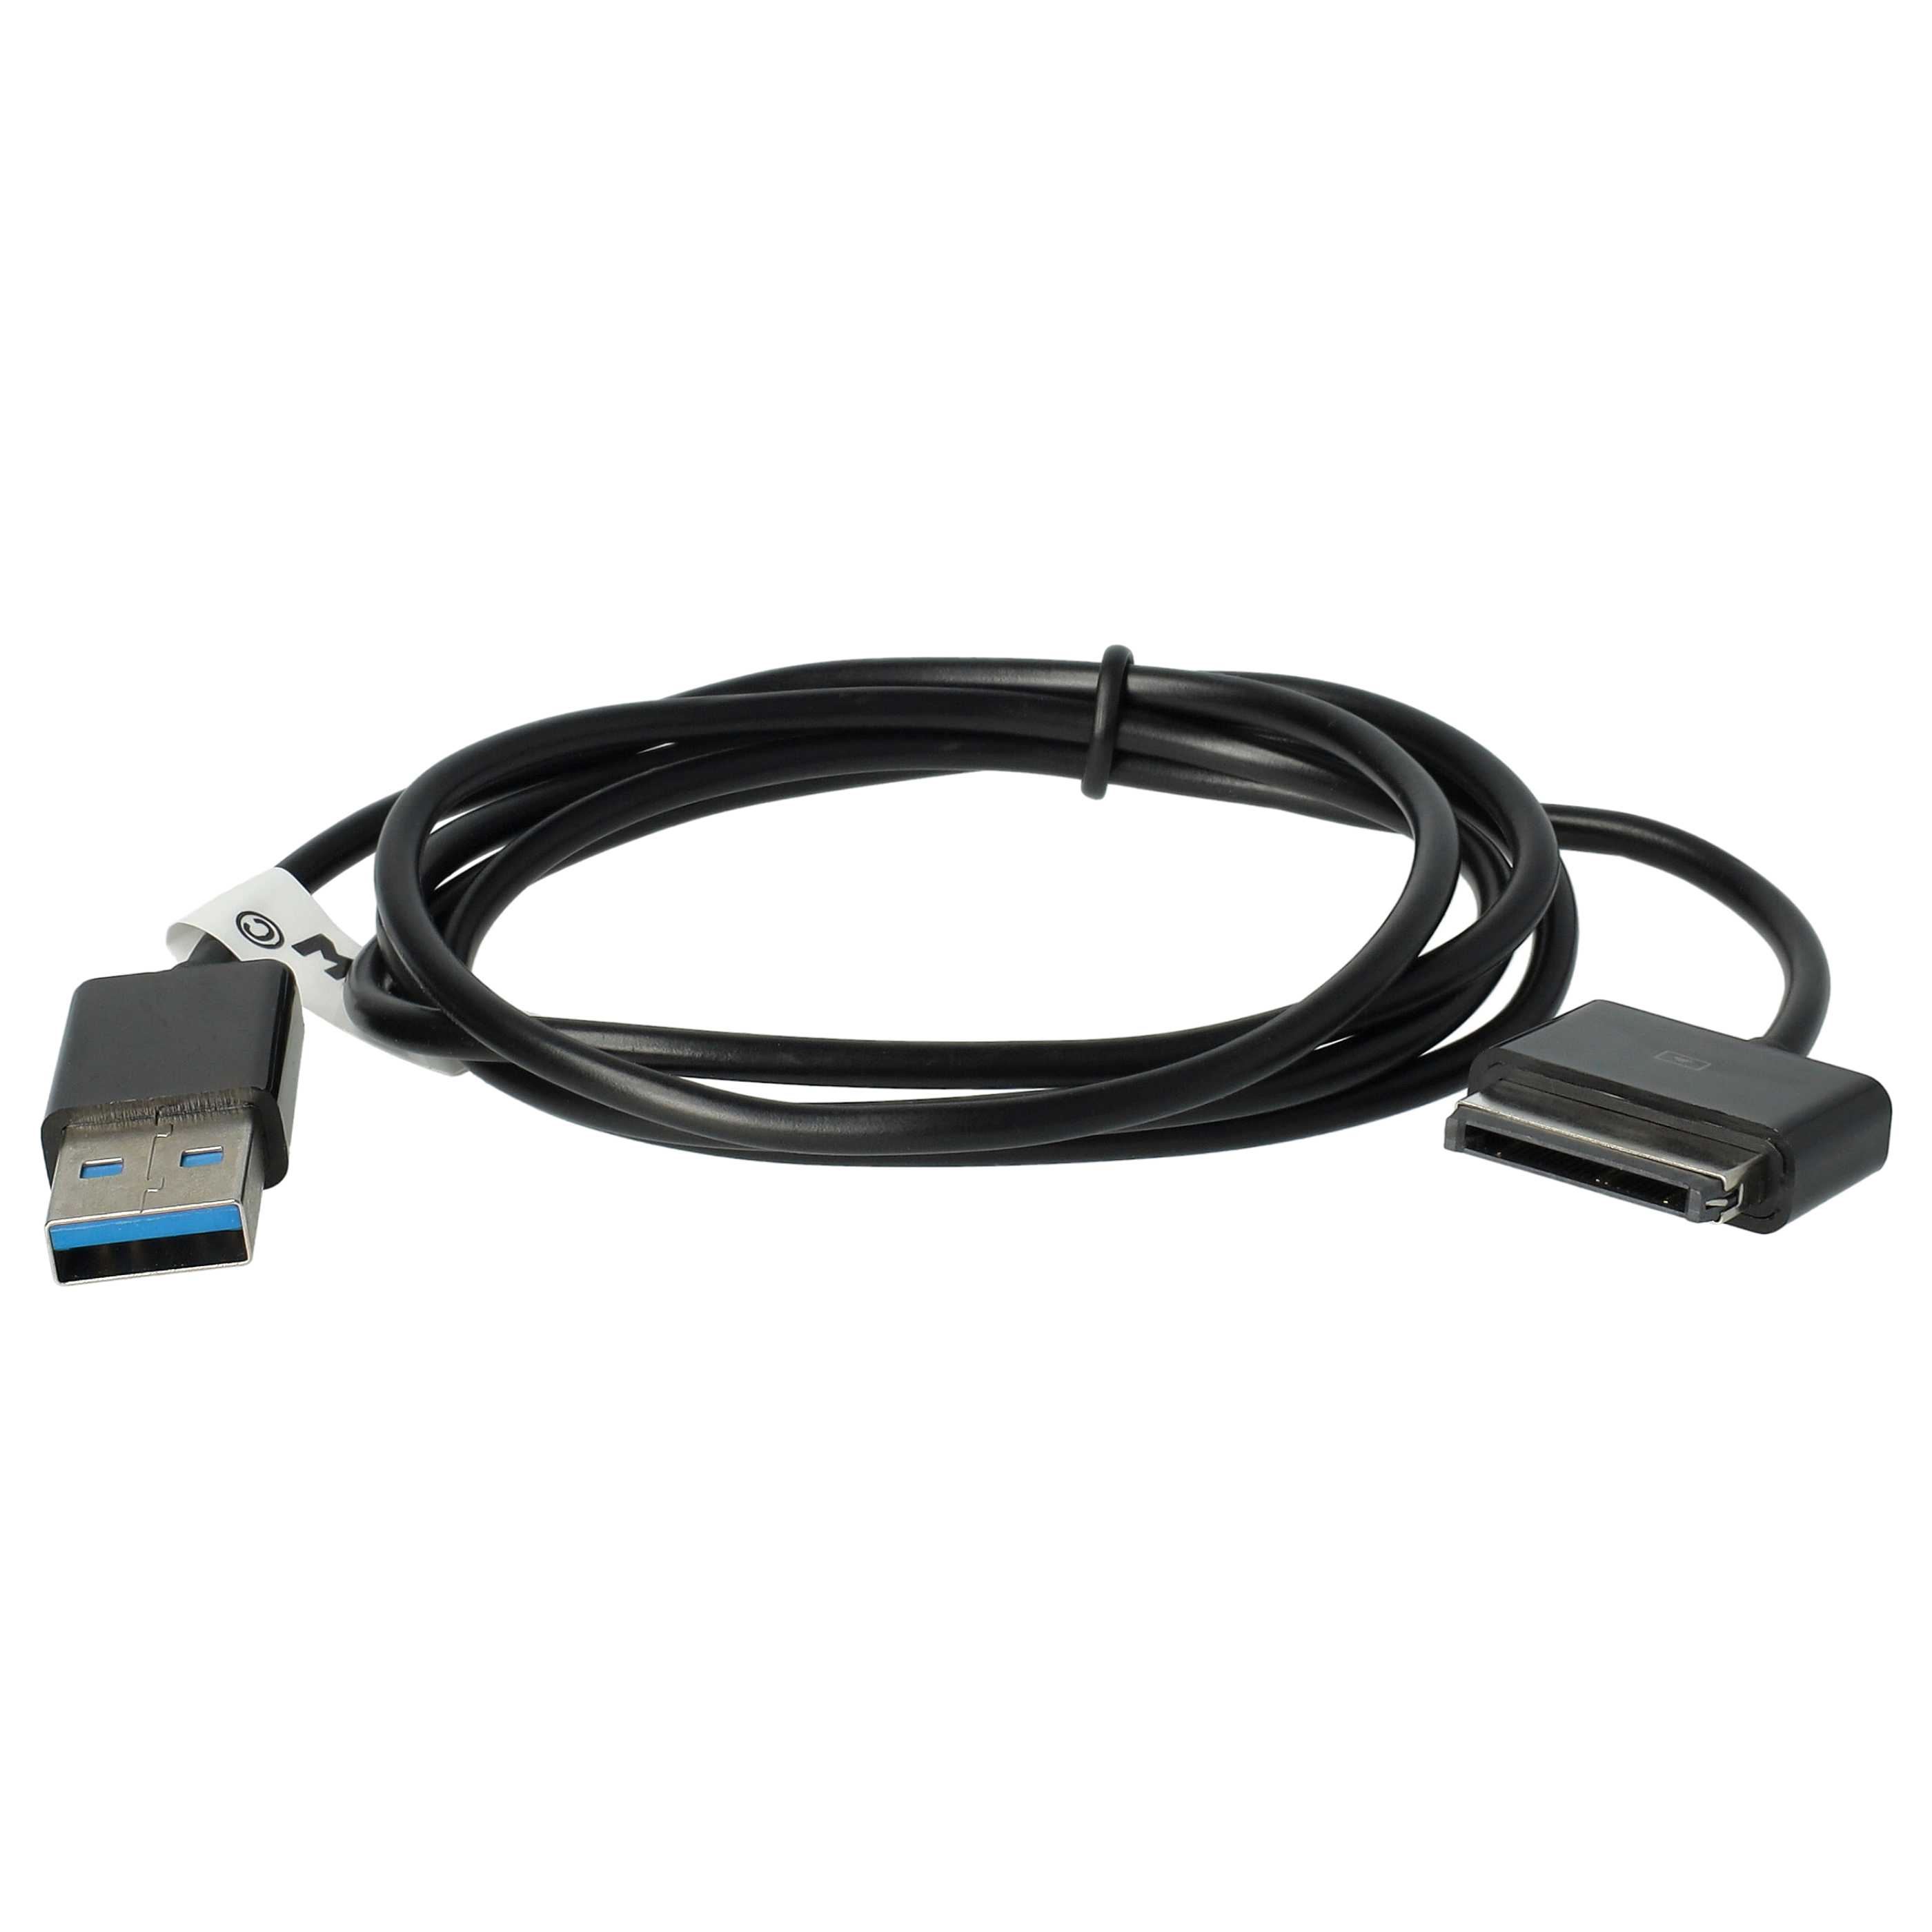 Cable de datos USB para tablet Asus Eee Pad Transformer SL101 - cable de carga 2en1, 100cm